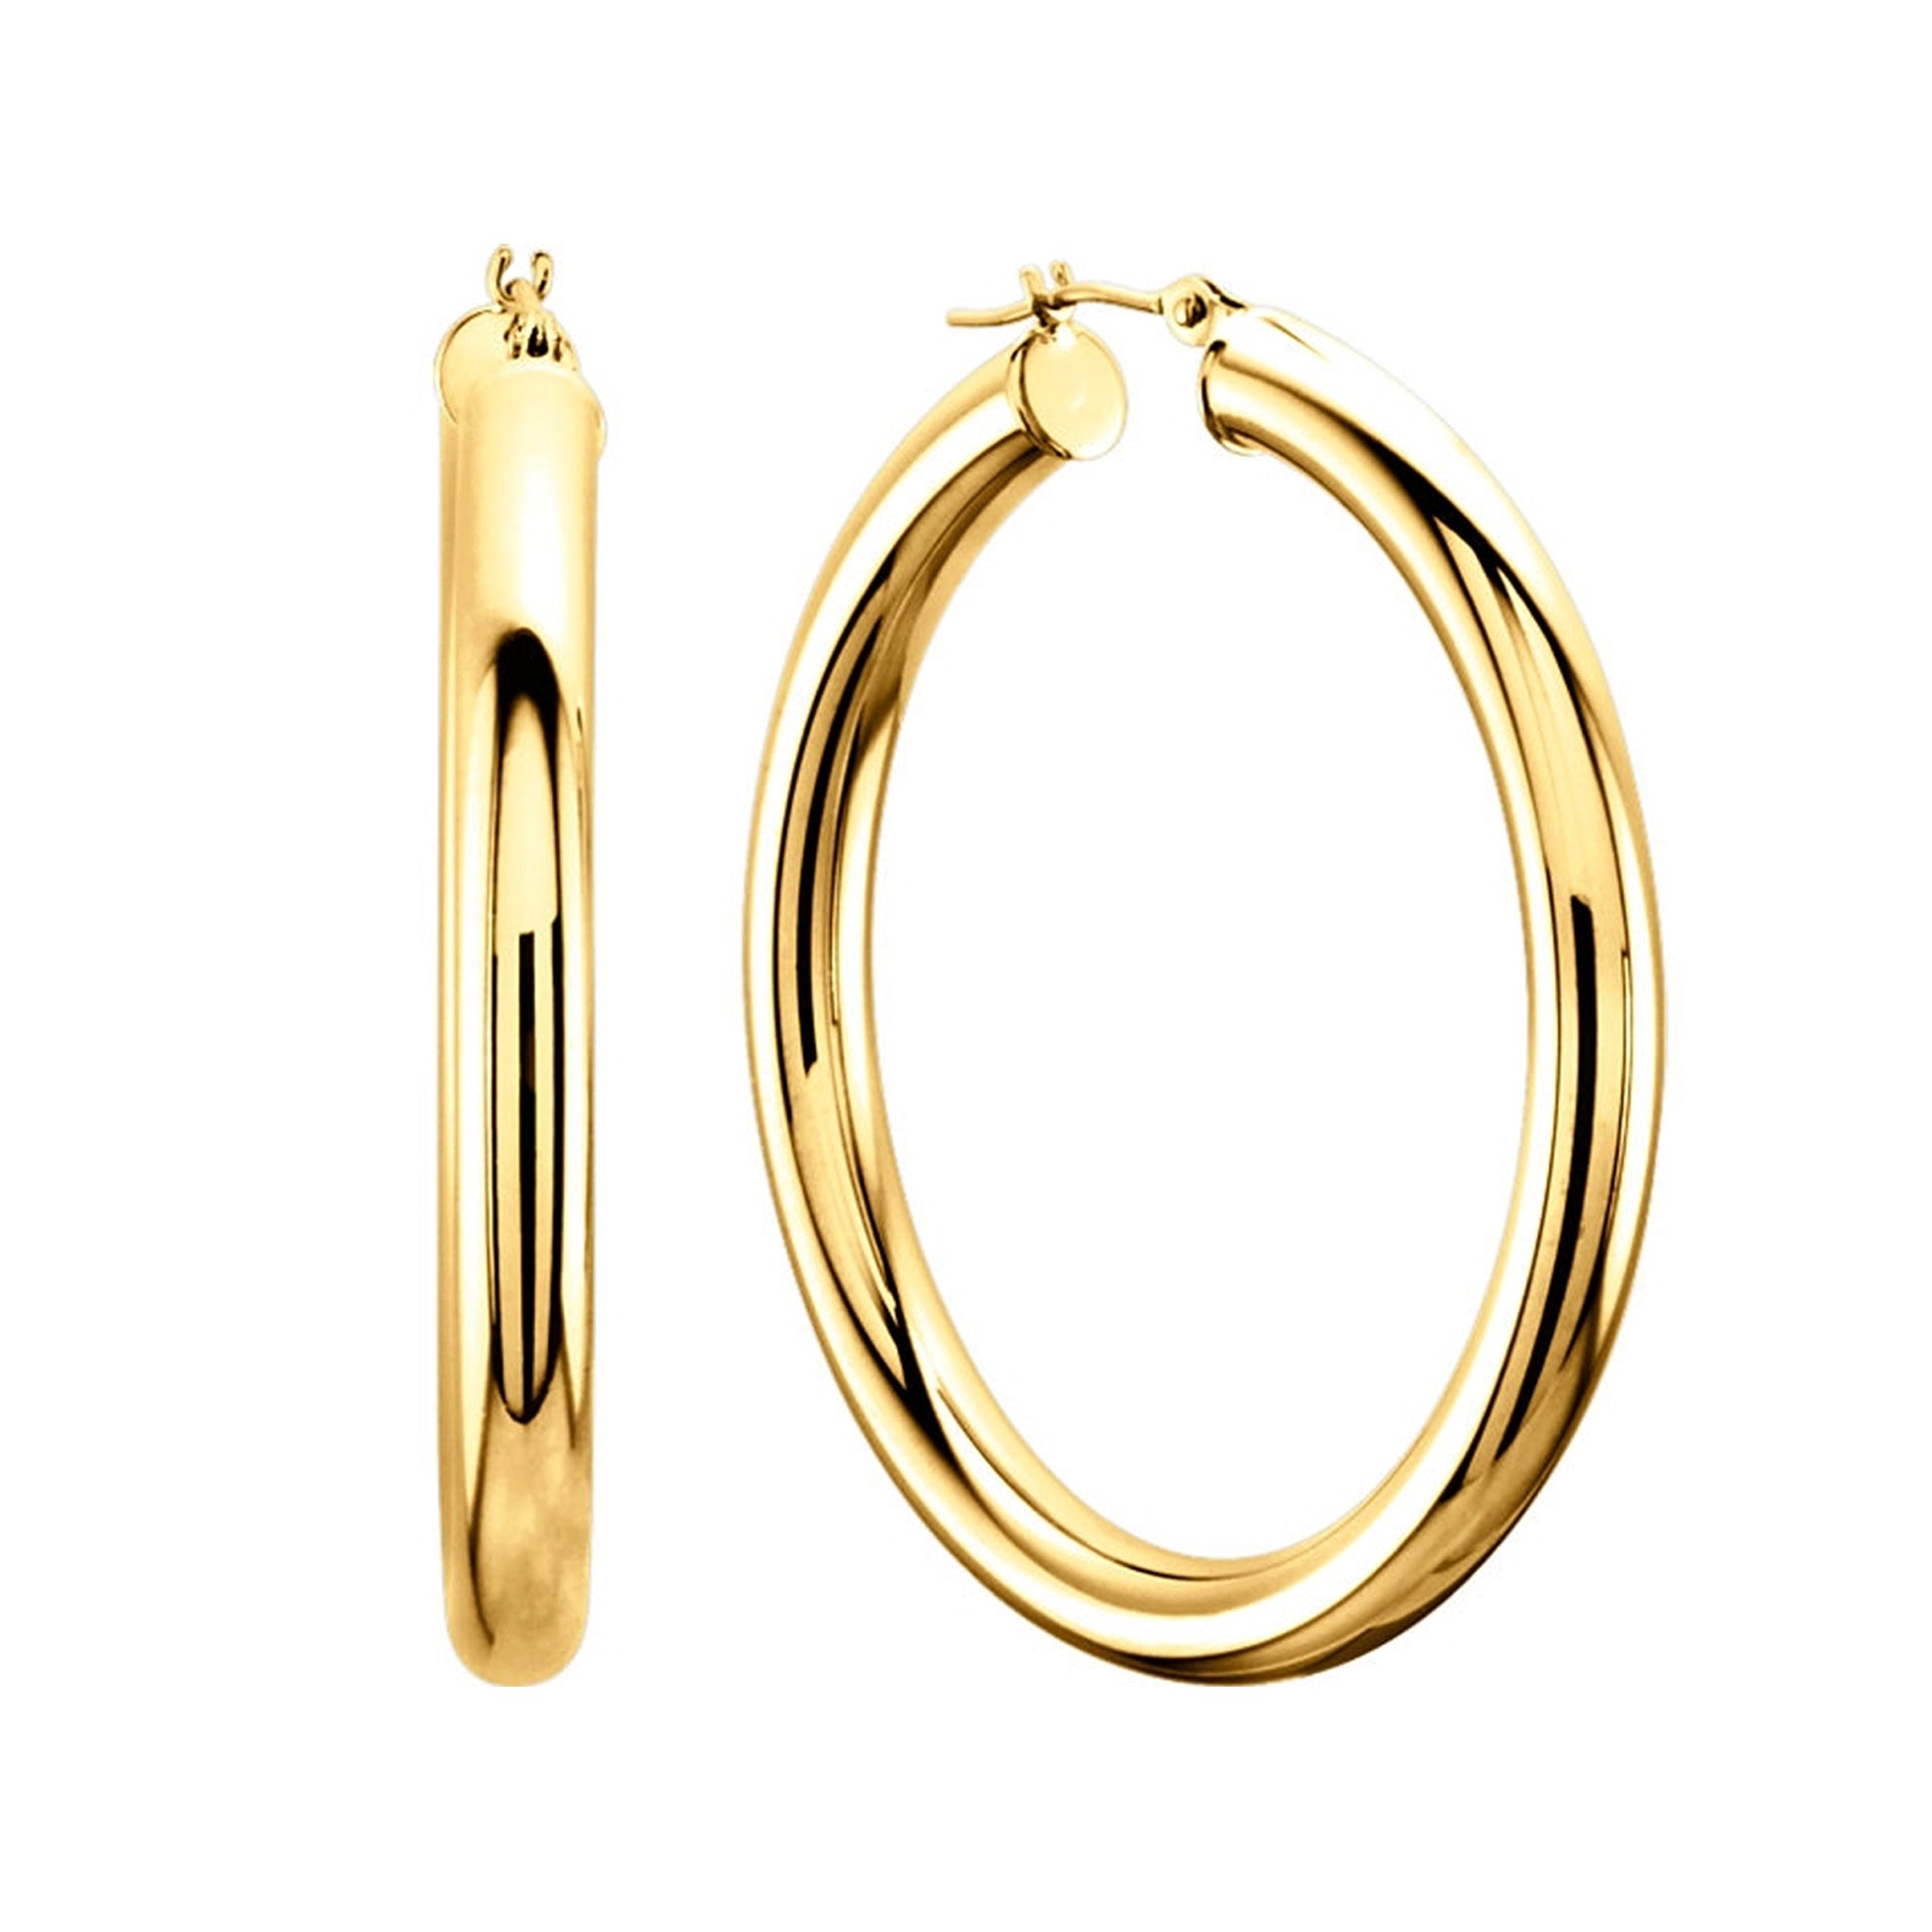 10k gult guld 3 mm glänsande runda rörbågeörhängen fina designersmycken för män och kvinnor